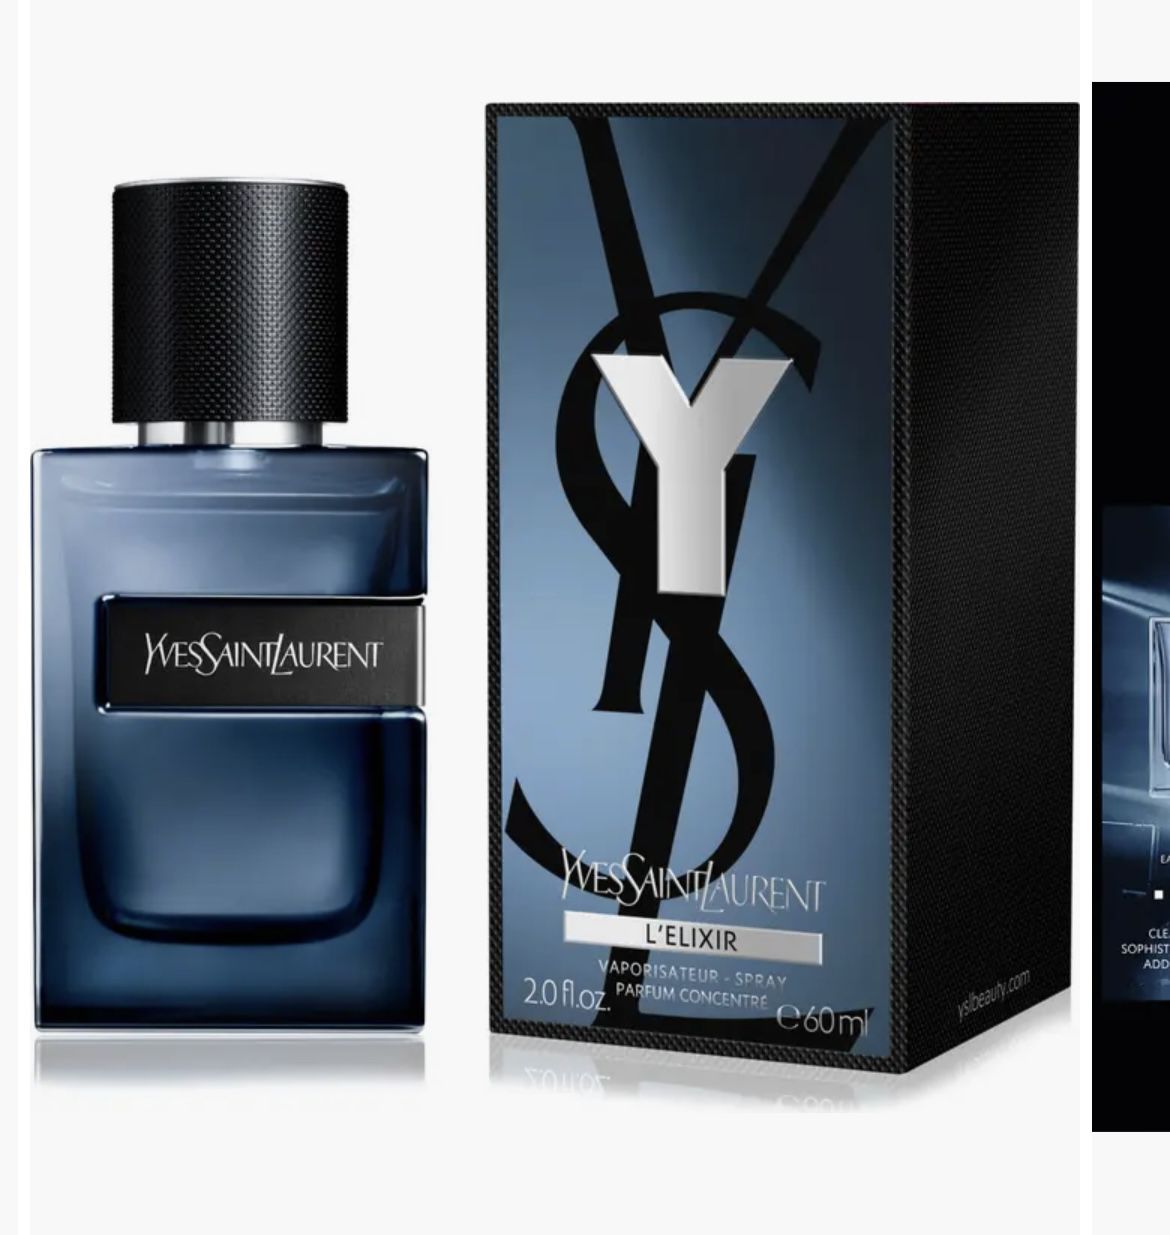 BRAND NEW $180 YSL men’s Cologne Fragrance 